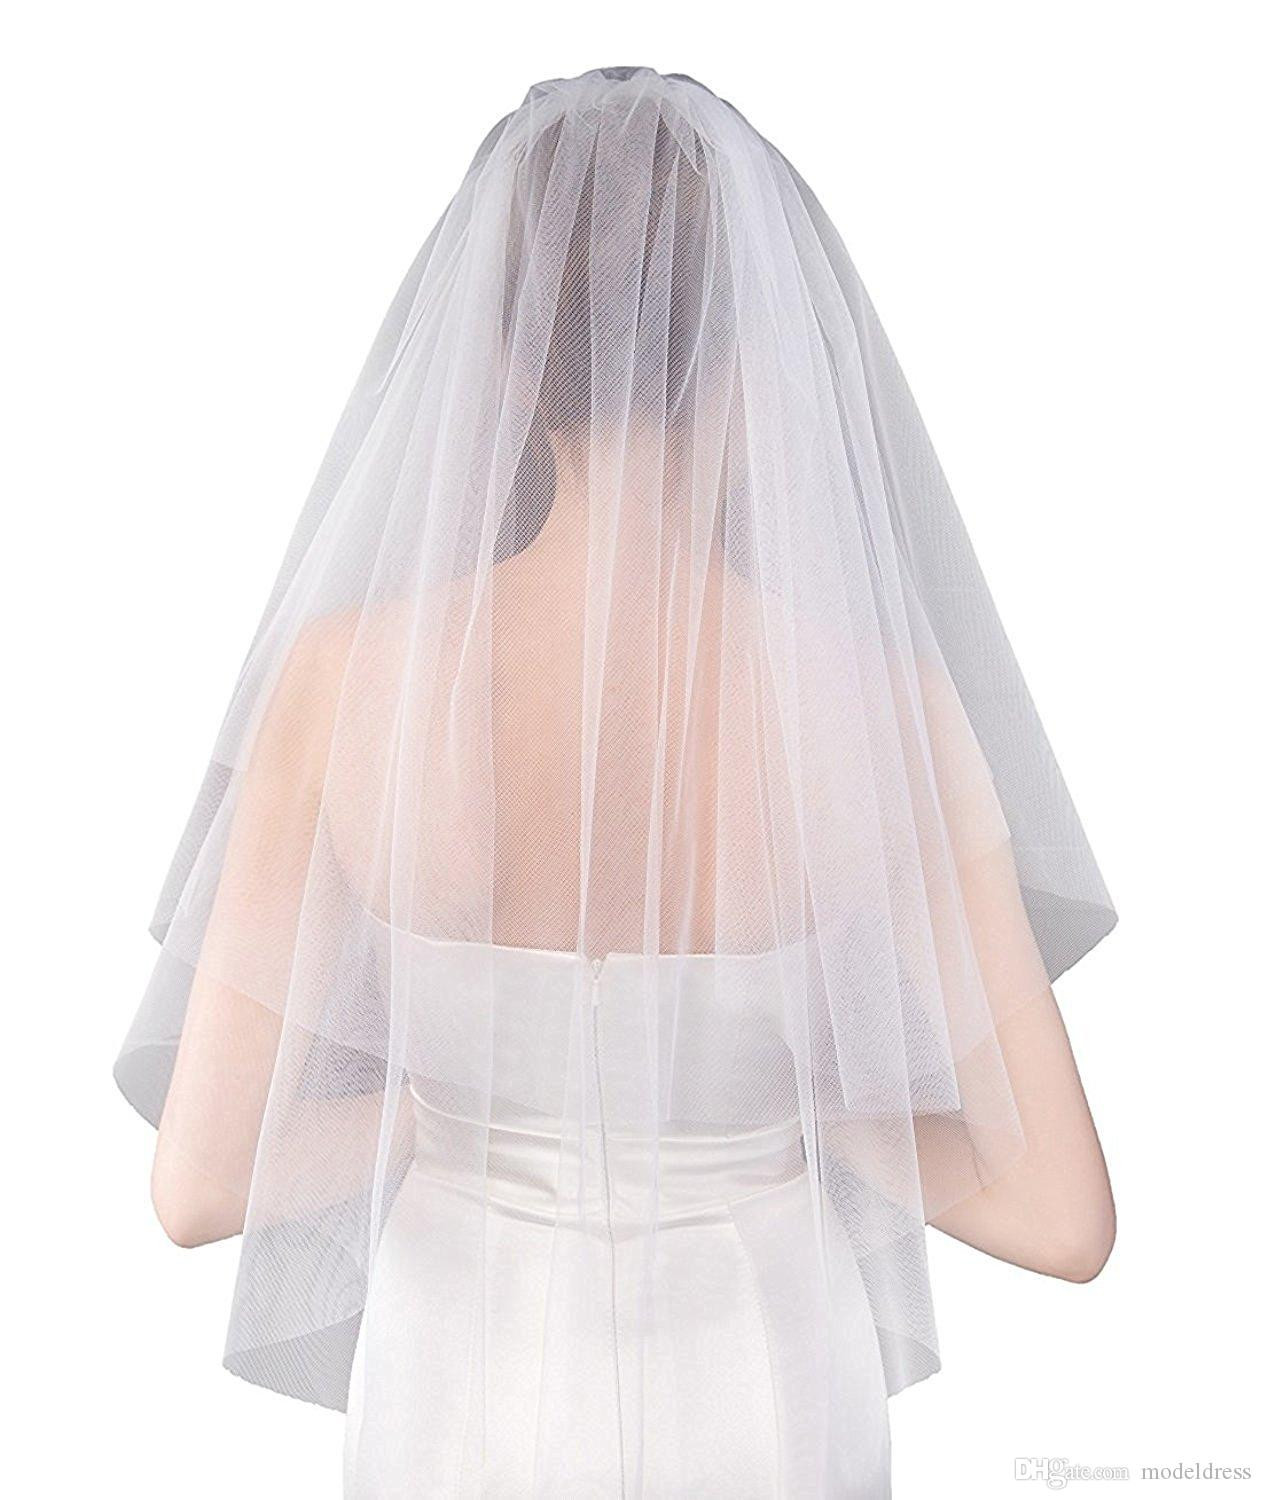 Short Ivory Wedding Veils Uk
 2018 New Short Bridal Veils With b Soft Tulle White